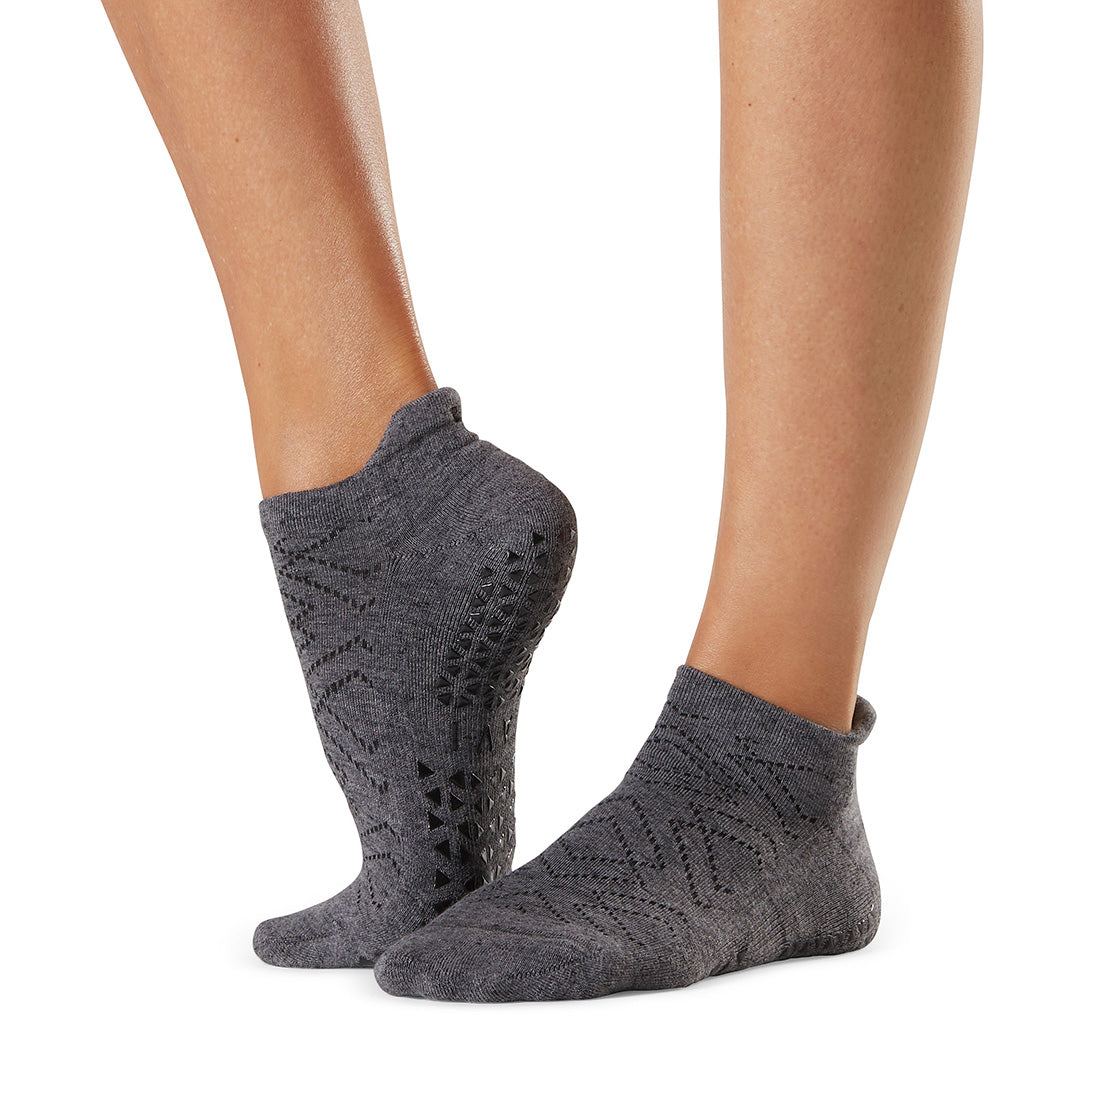 ToeSox - Elle Grip Socks - T8 Fitness - Asia Yoga, Pilates, Rehab